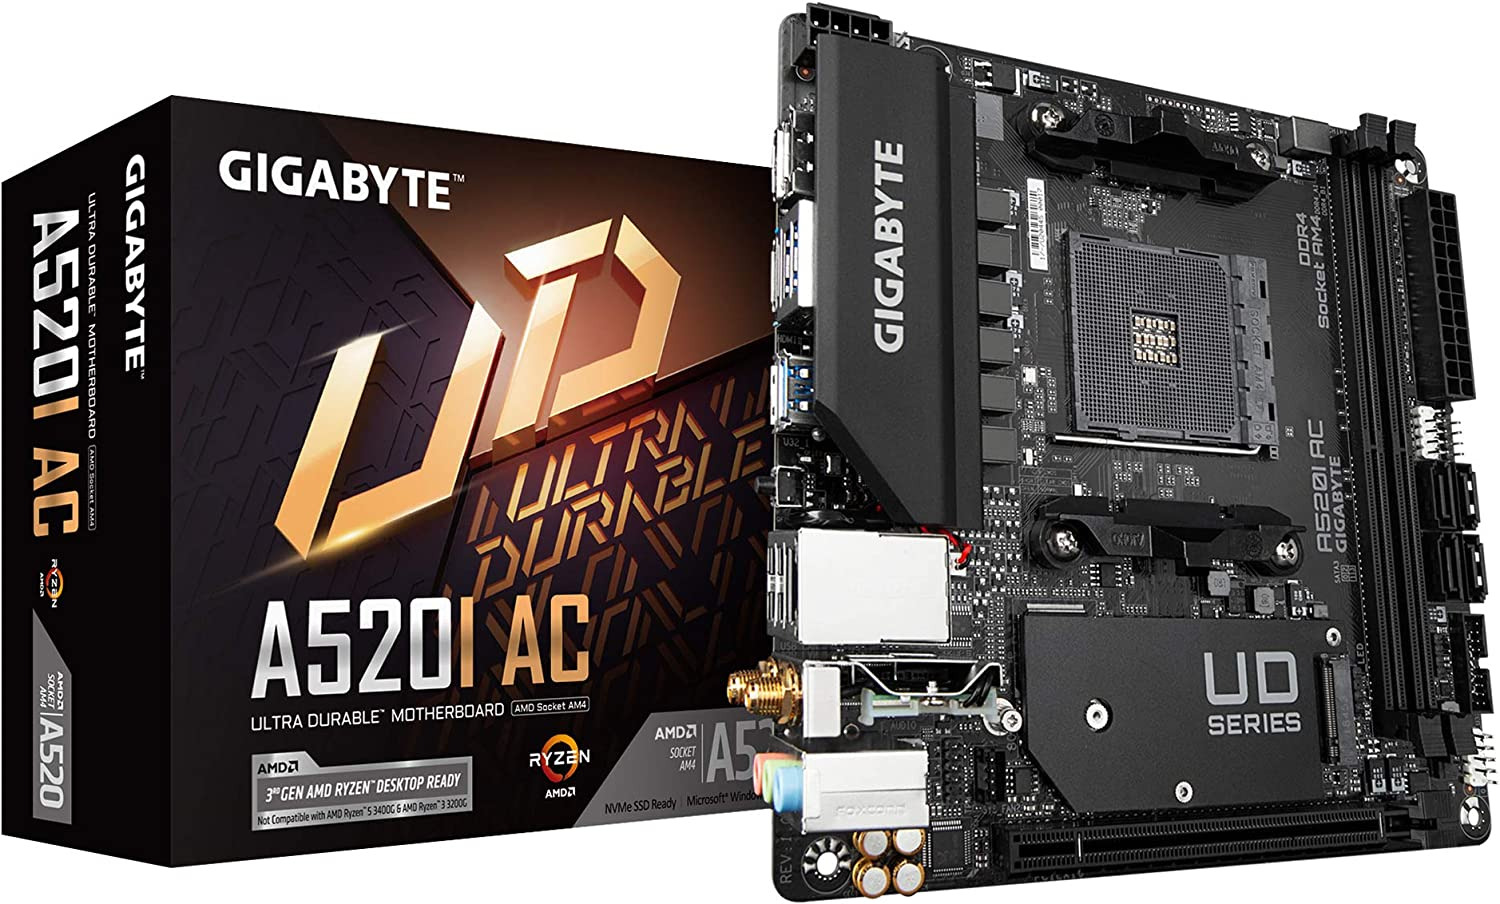 Gigabyte A520I AC (AMD Ryzen Am4/Mini-Itx/Direct 6 Phases Digital PWM with 55A